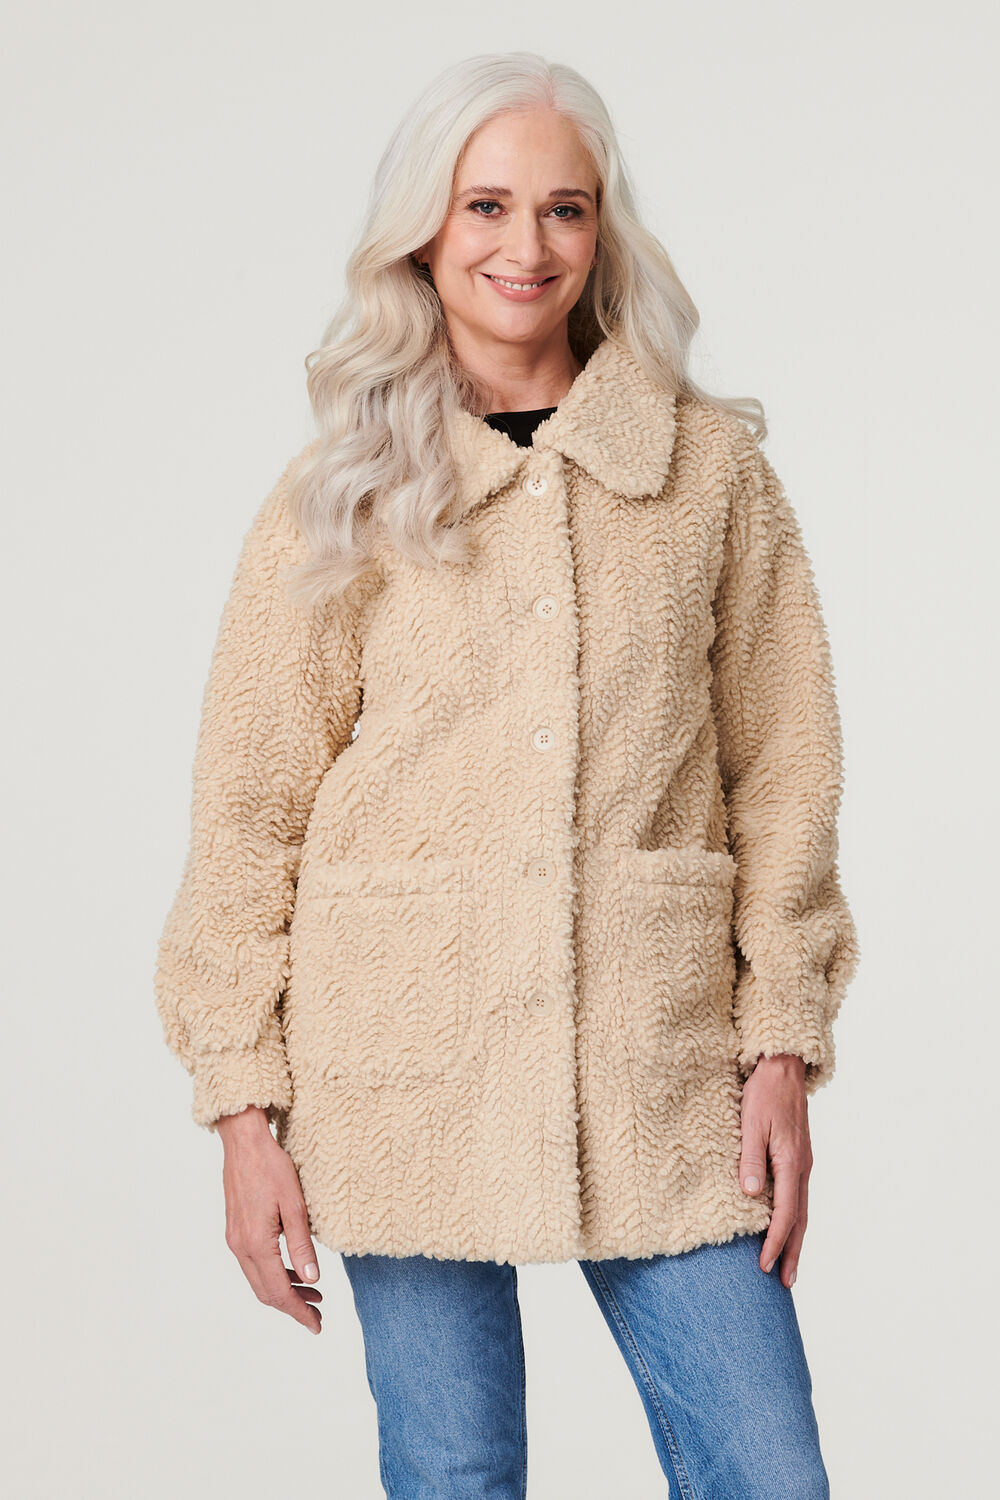 Izabel London Women’s Beige Textured Faux Fur Teddy Coat, Size: 16